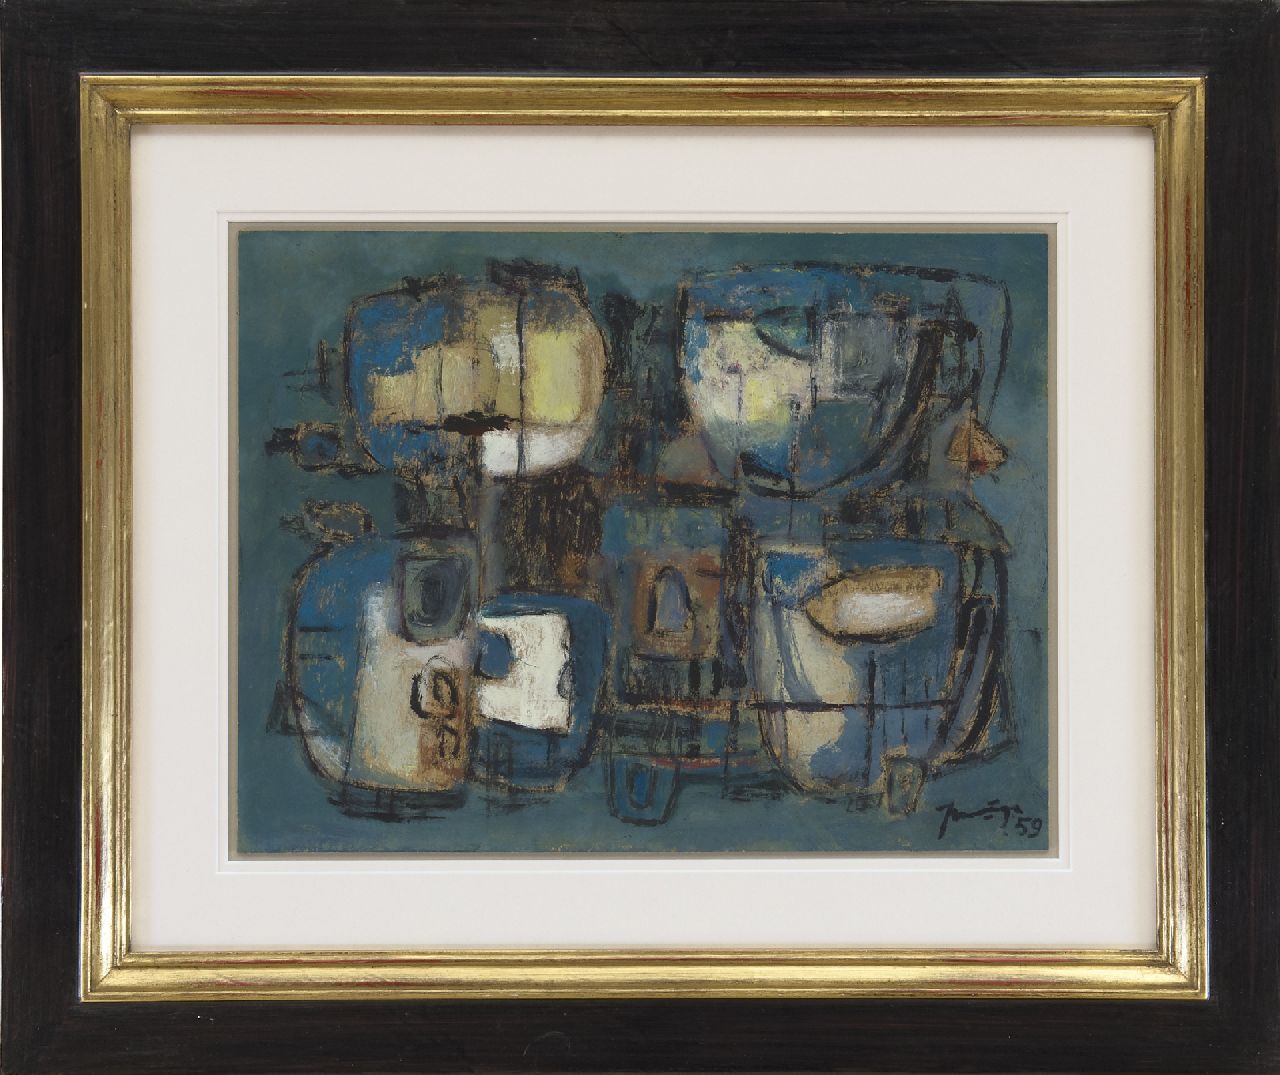 Nanninga J.  | Jacob 'Jaap' Nanninga, Compositie, 1959, gemengde techniek op papier 30,5 x 39,3 cm, gesigneerd rechtsonder en gedateerd '59